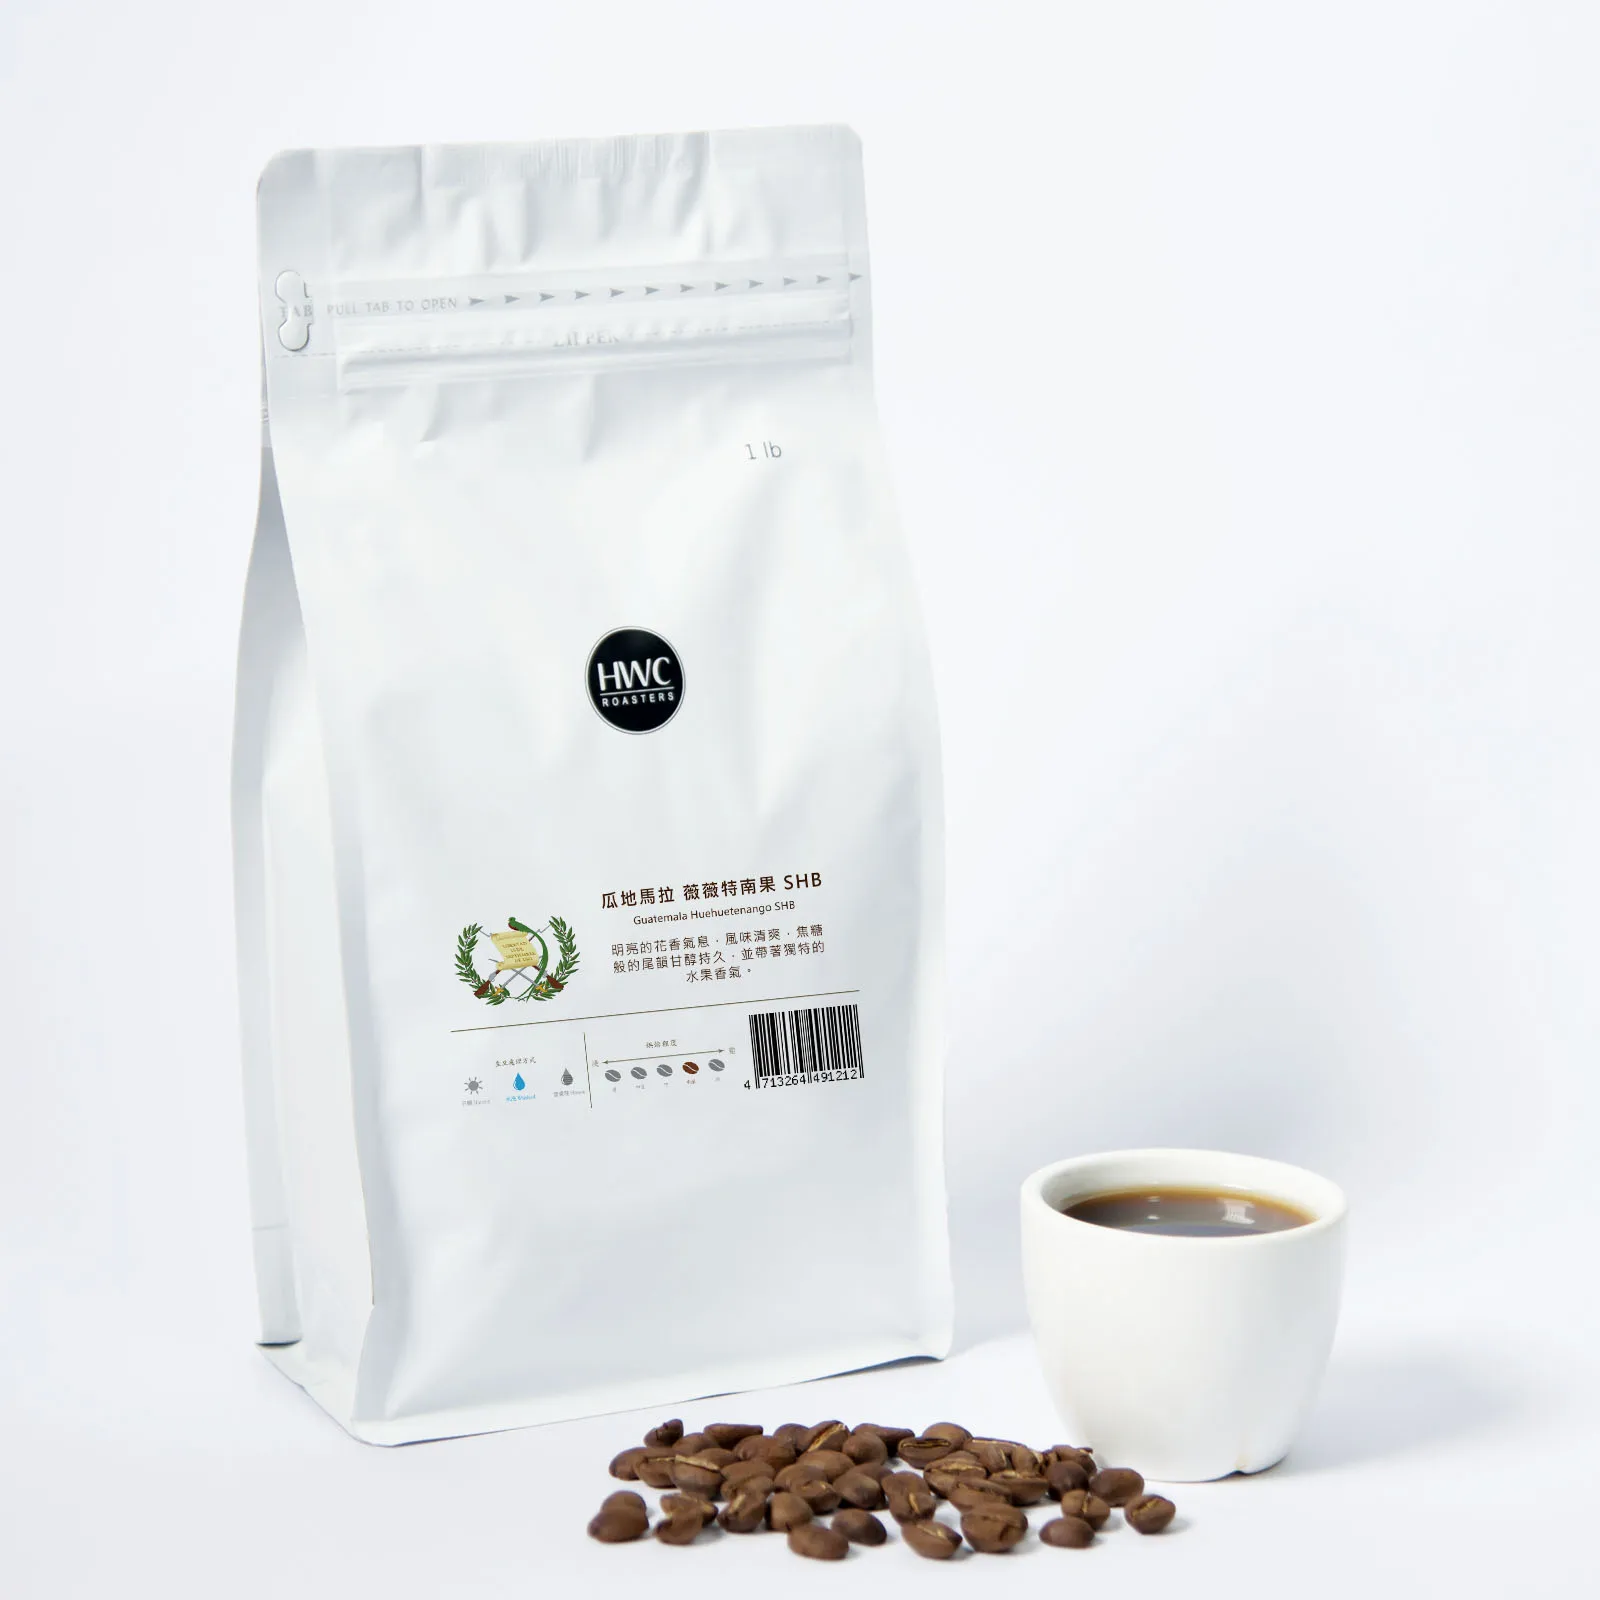 
Guatemala Huehuetenango SHB Roasted Coffee Bean Wholesale Arabica  (62010479025)